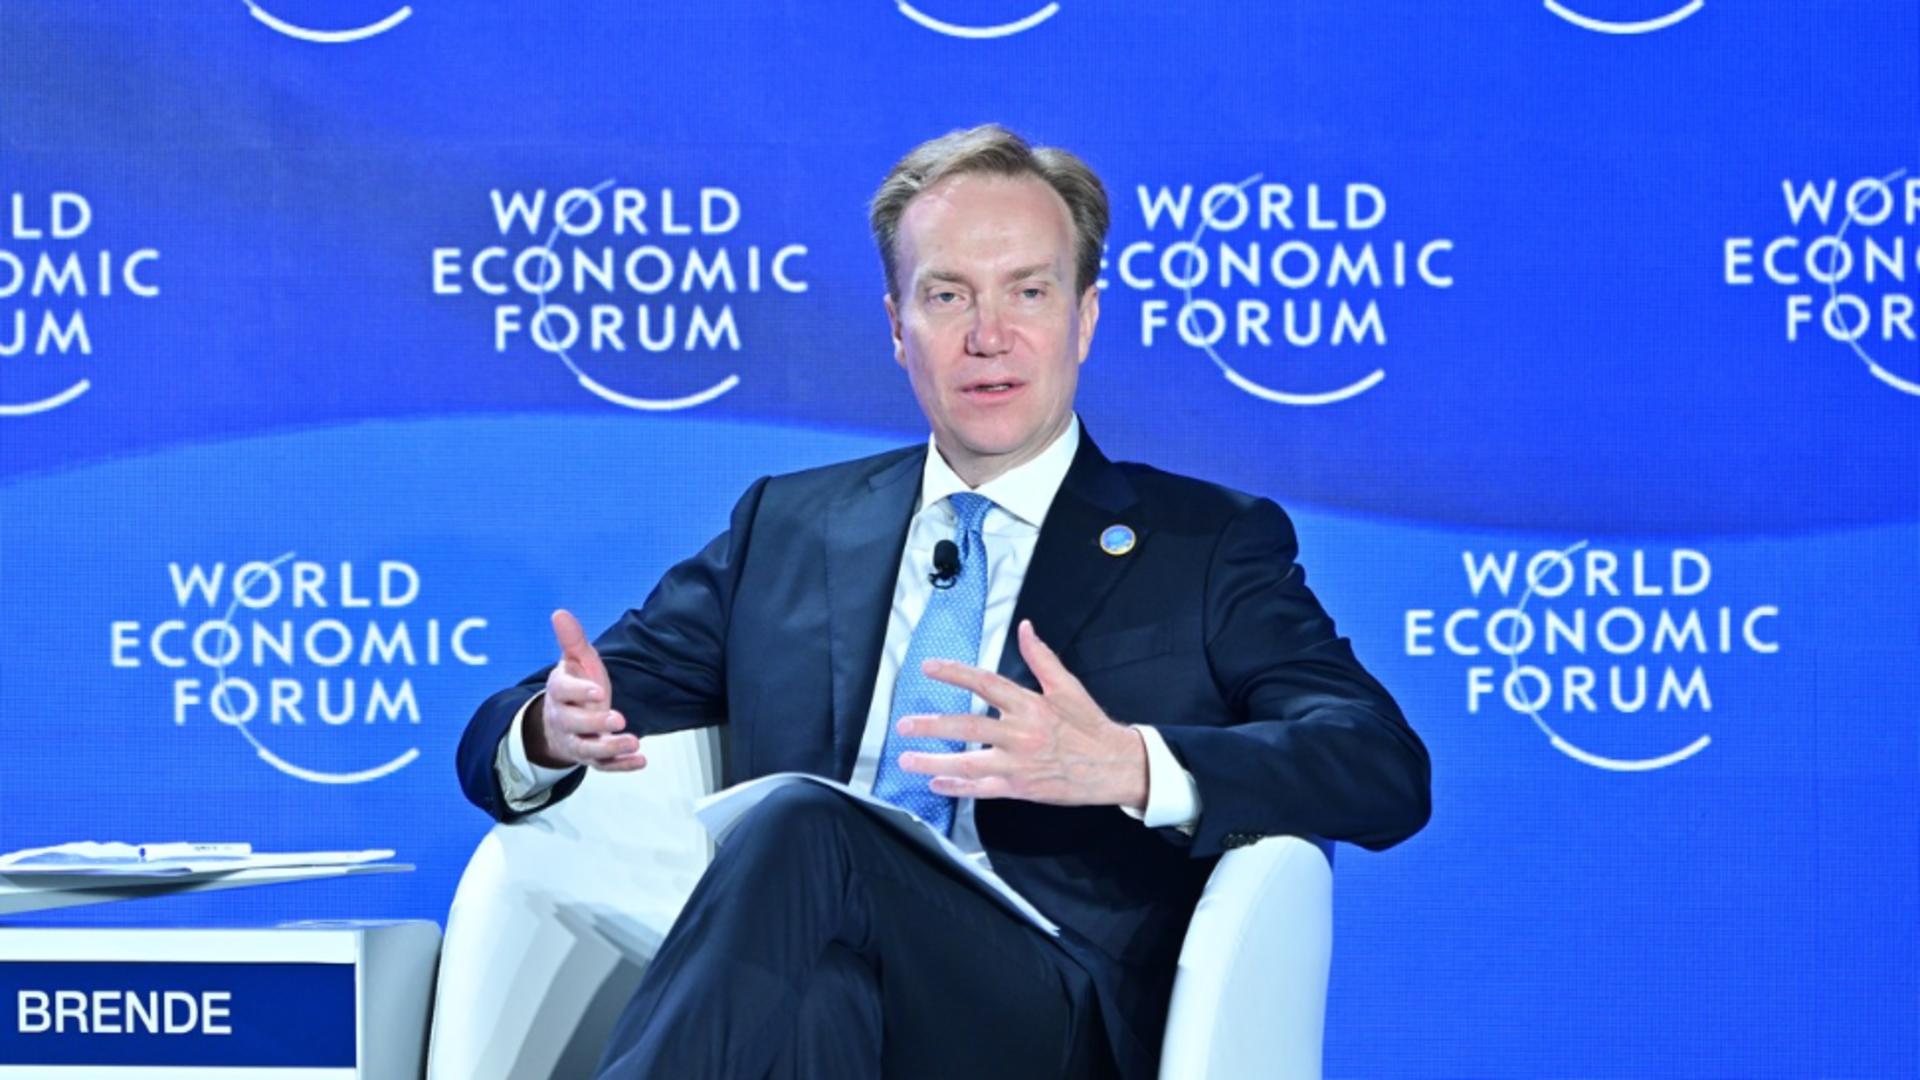 Președintele Forumului Economic Mondial a vorbit despre „Noua Ordine Mondială” Foto: Profimedia